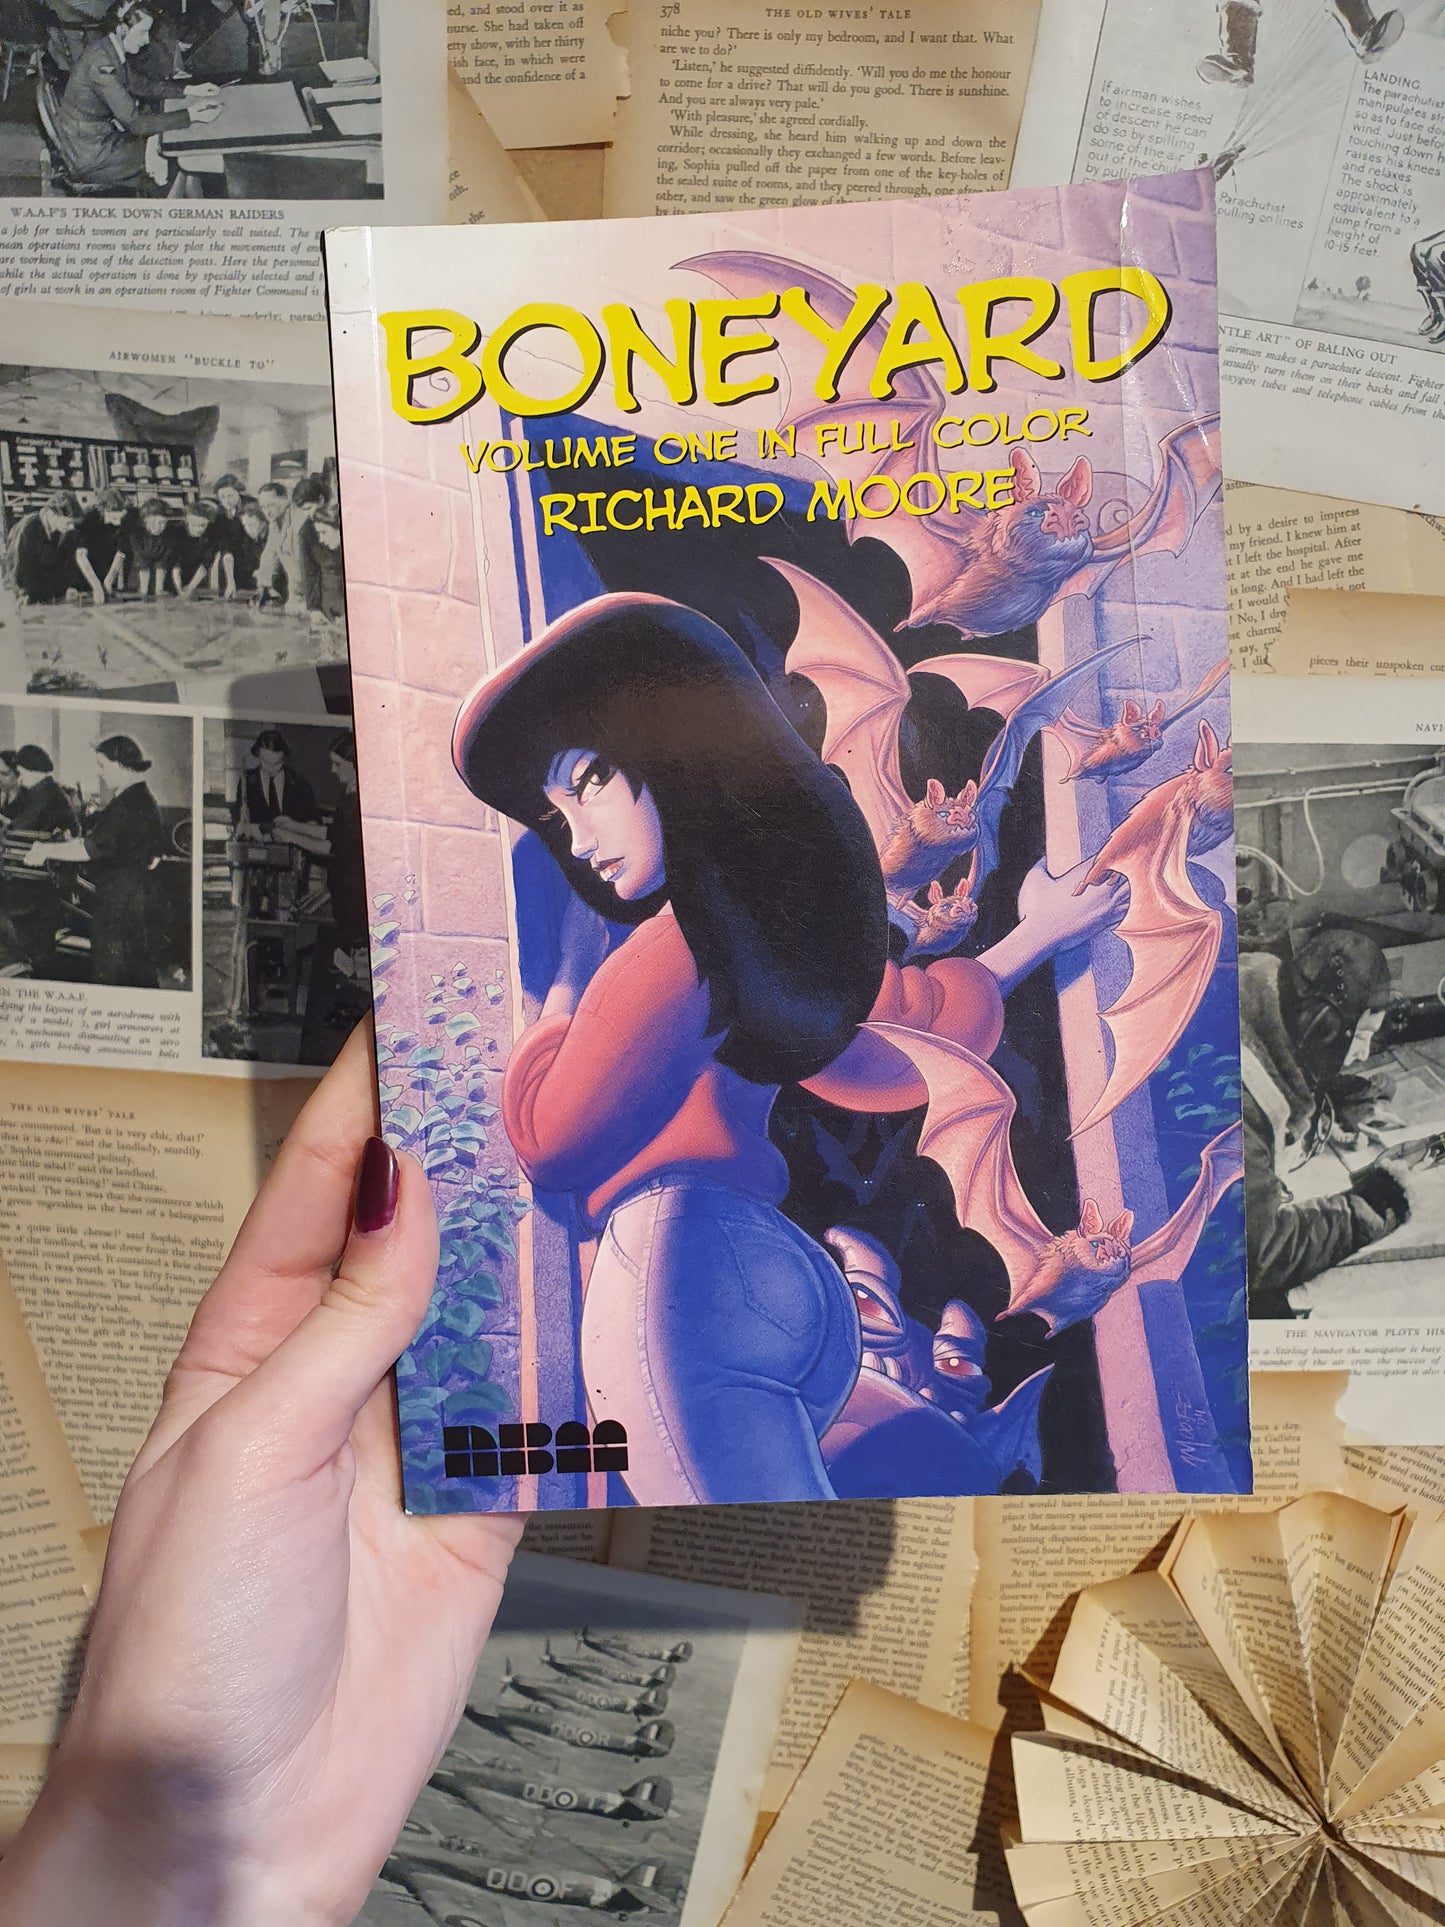 Boneyard Vol 1 by Richard Moore (2005)